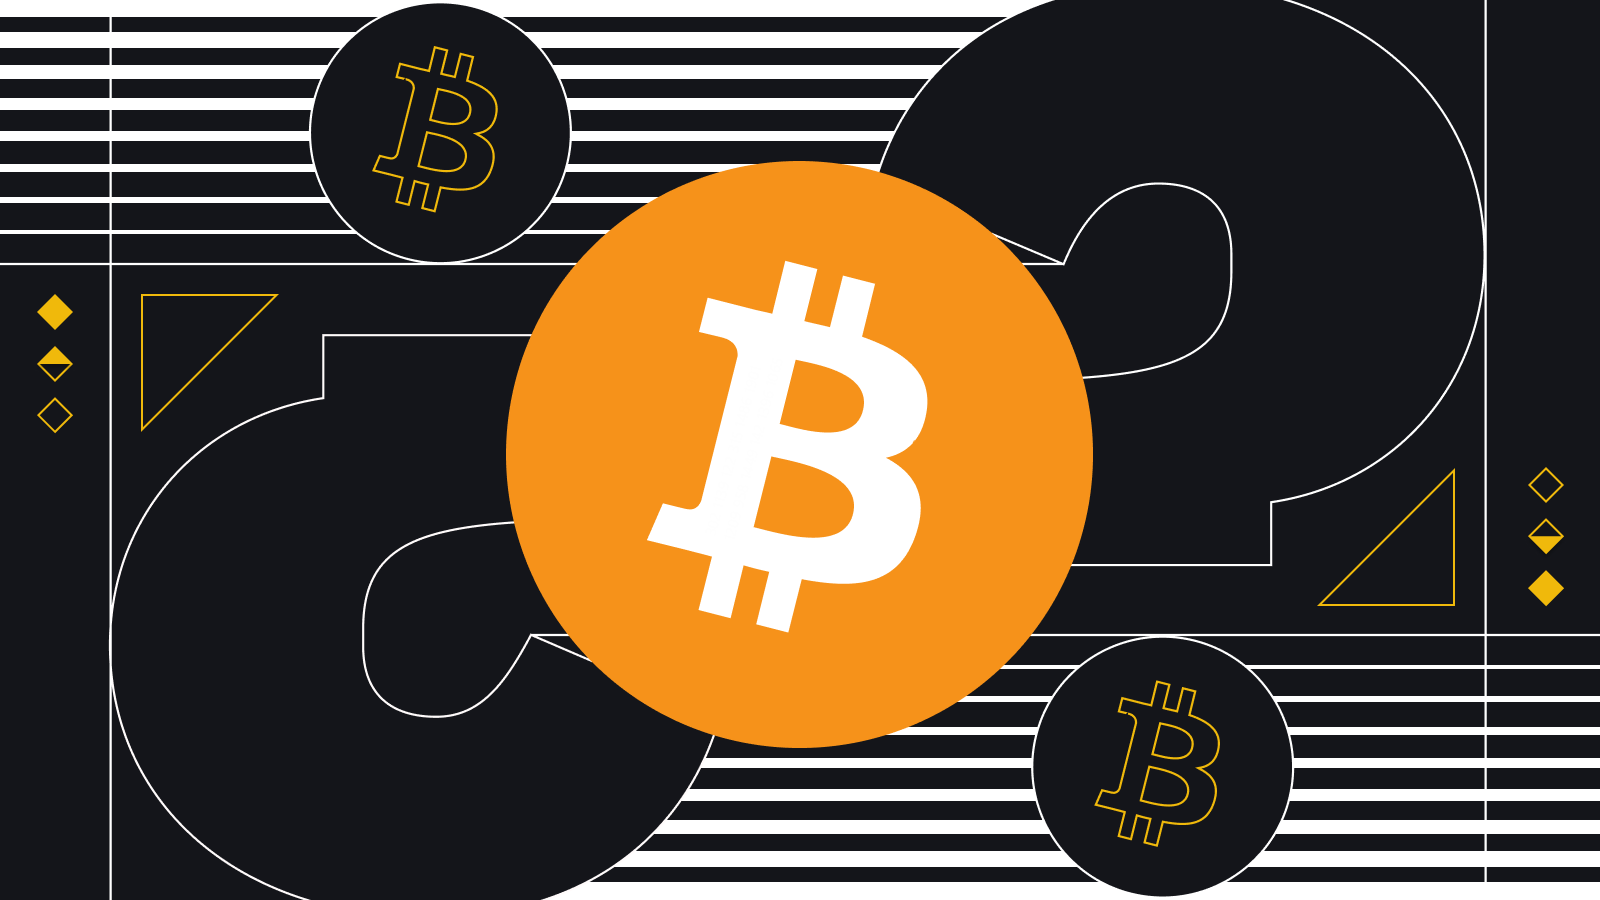 Can Bitcoin price reach $100,000?